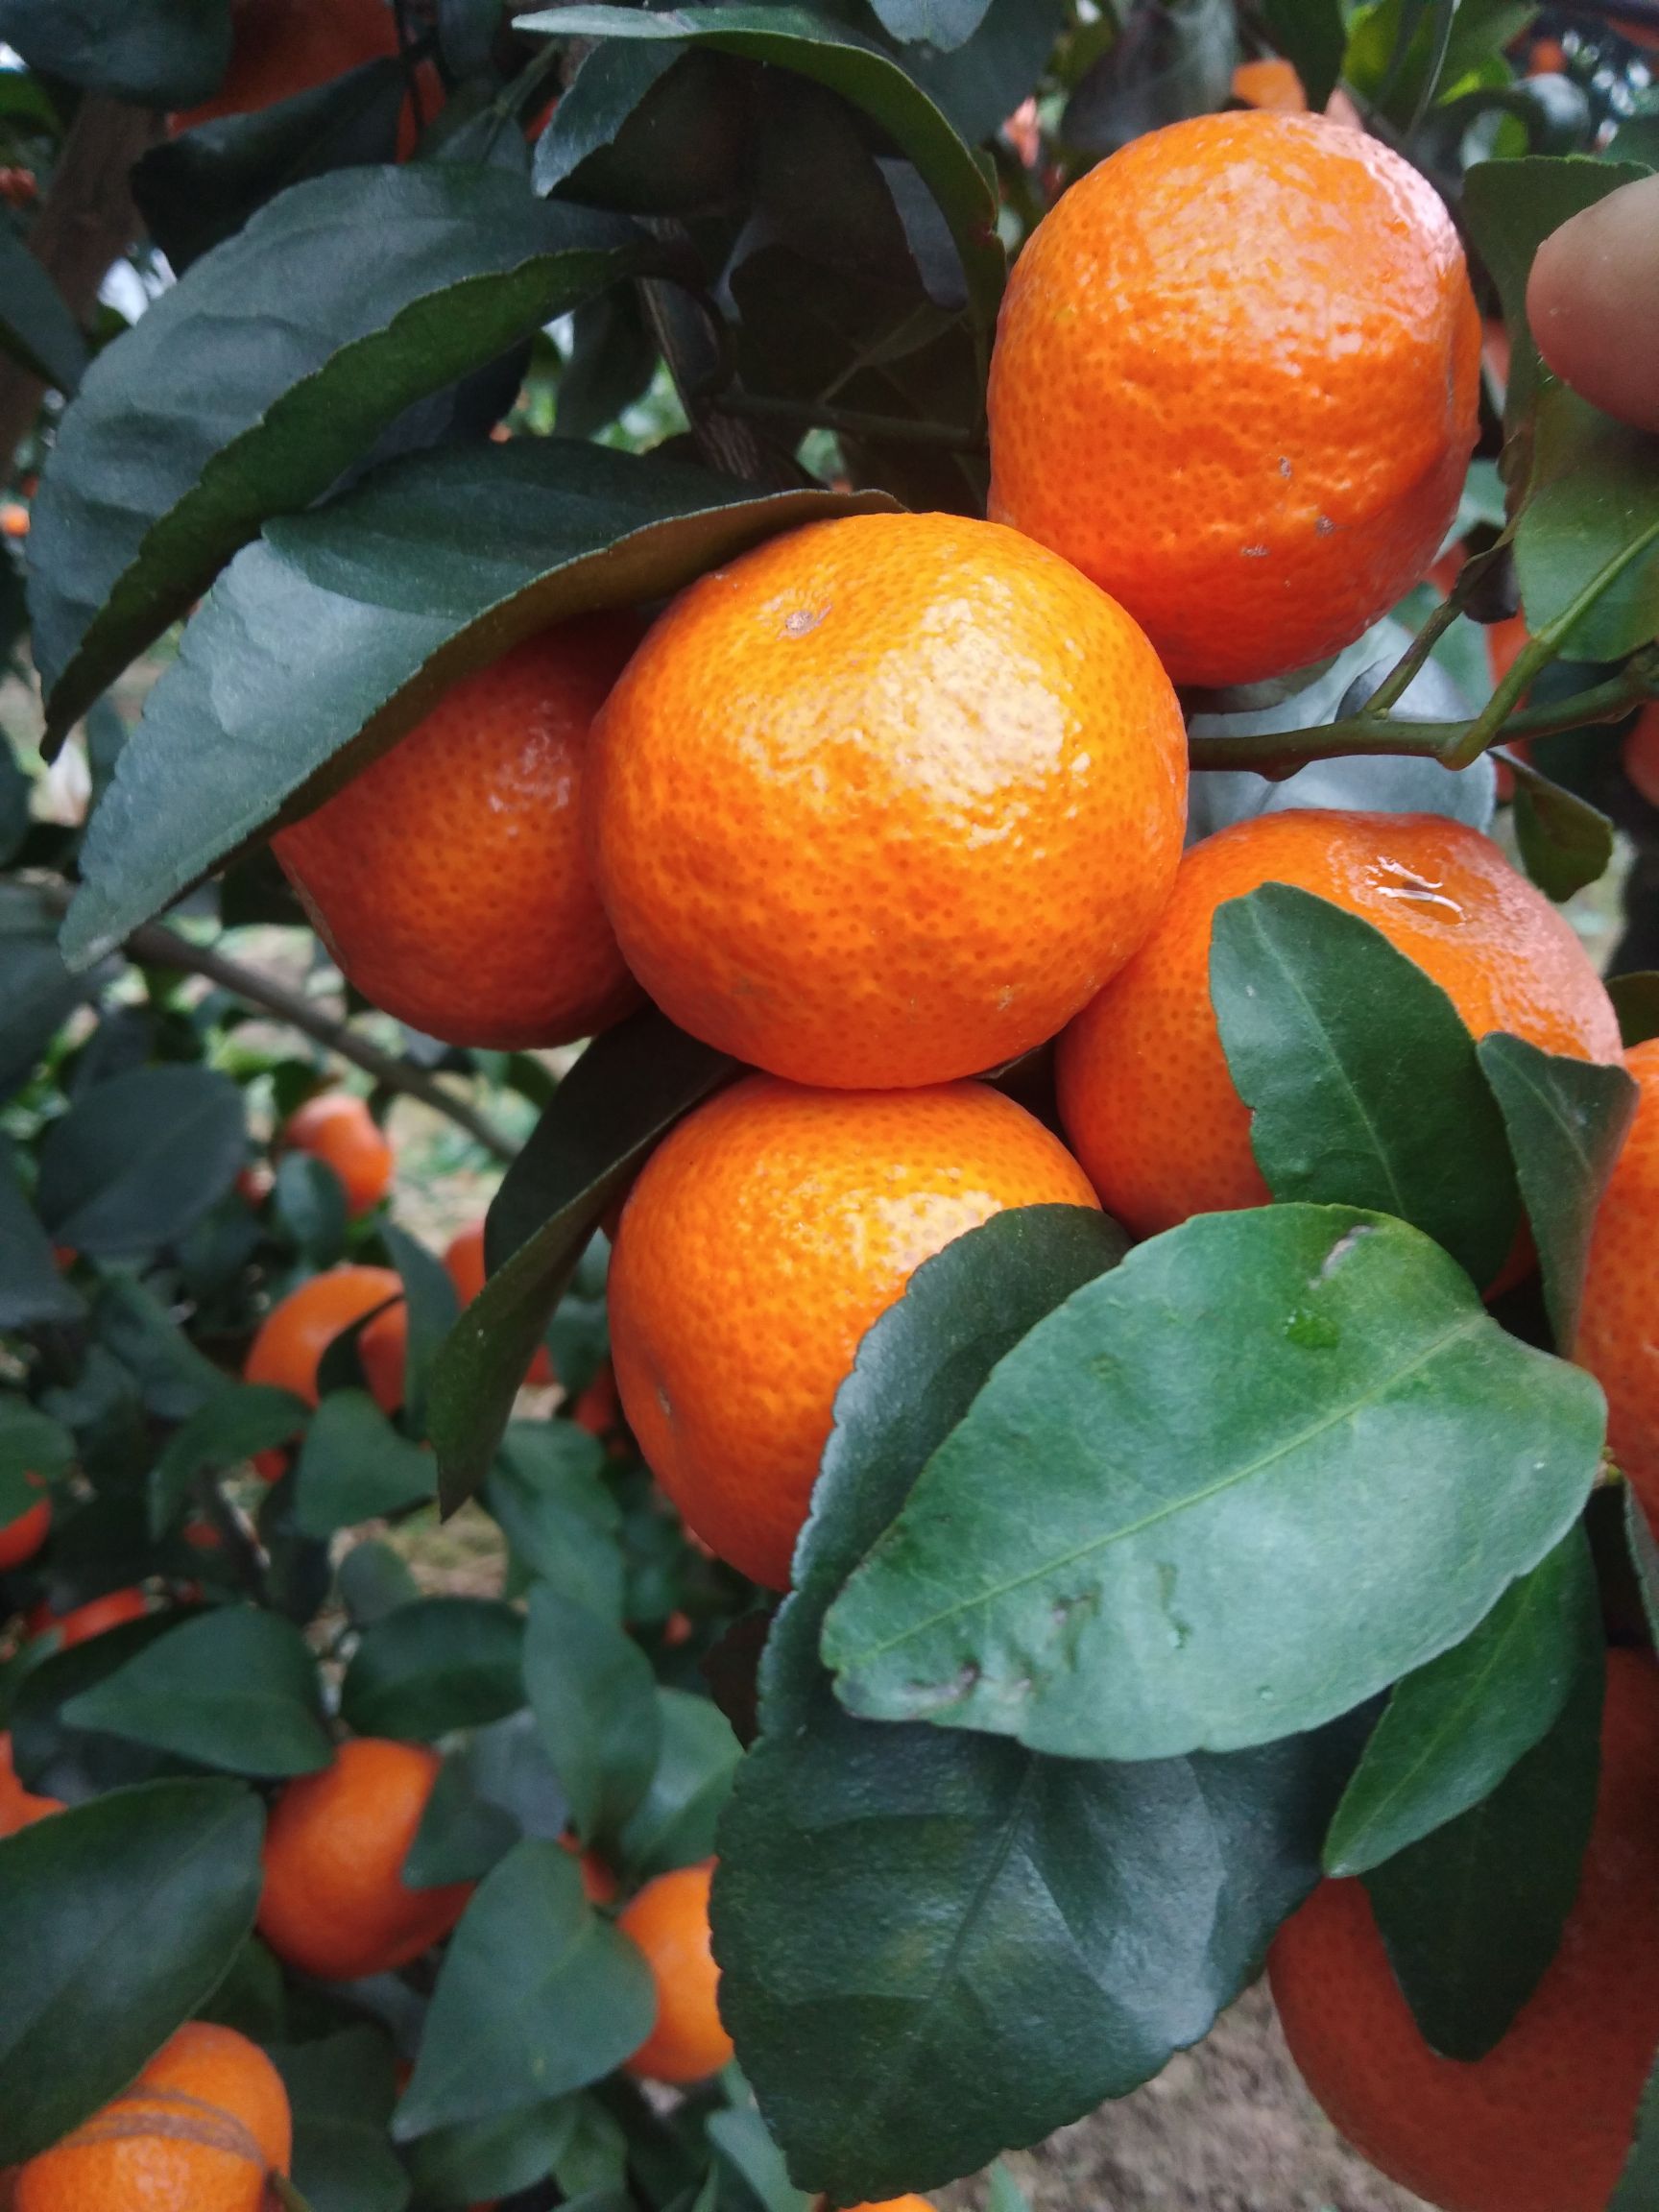 全州县广西沙糖橘桔子大量上市。可剪一刀订园收百家货都可以选择性多